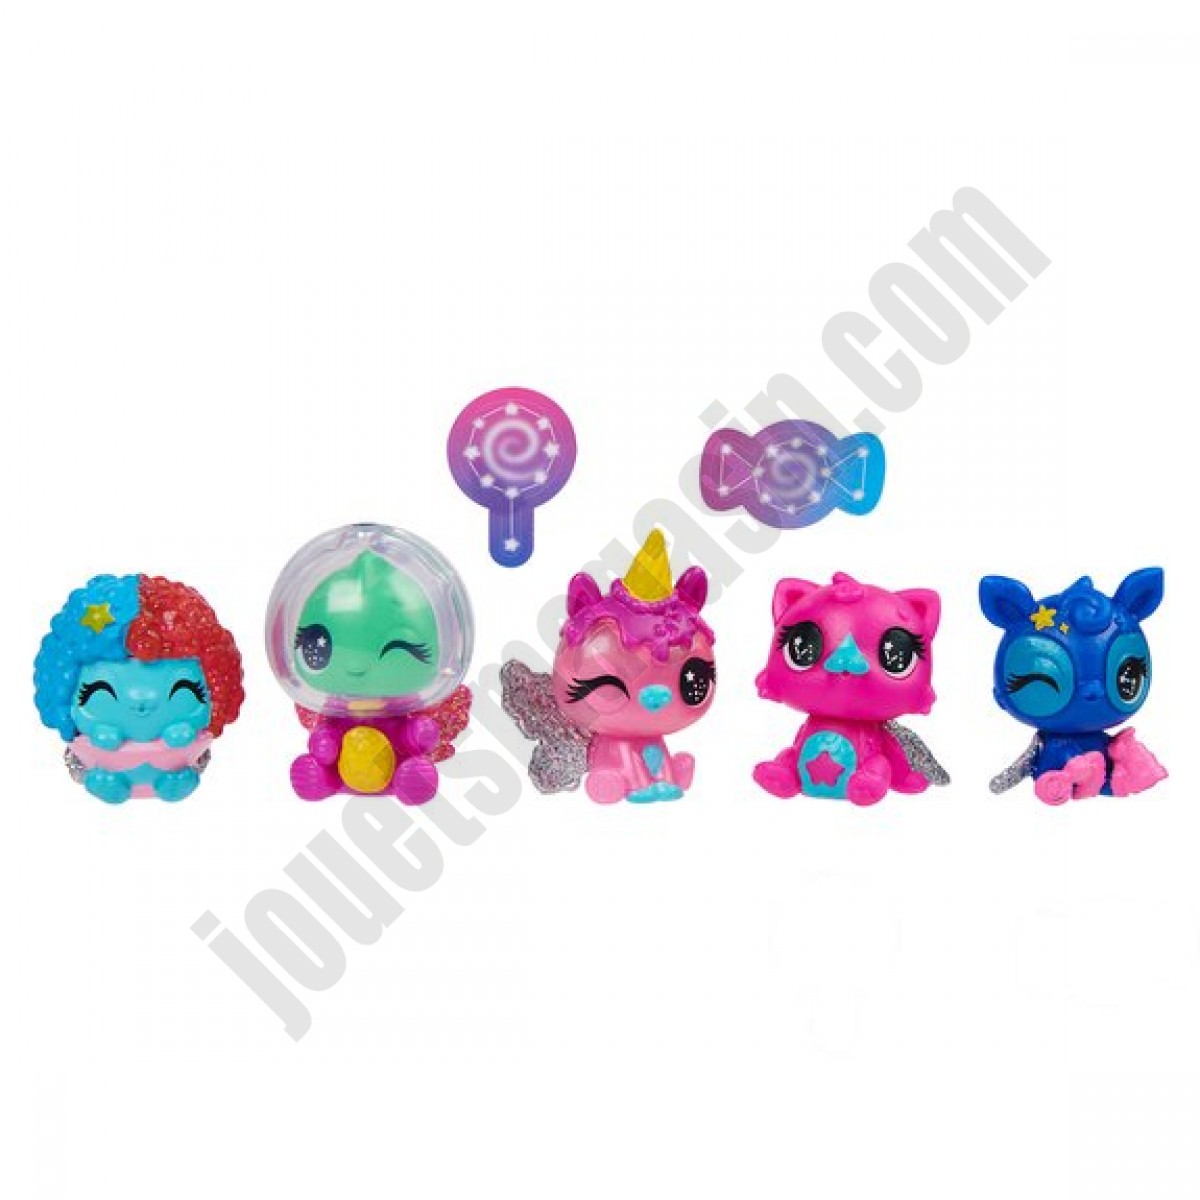 Coffret multipack 4 Figurines Hatchimals ◆◆◆ Nouveau - Coffret multipack 4 Figurines Hatchimals ◆◆◆ Nouveau